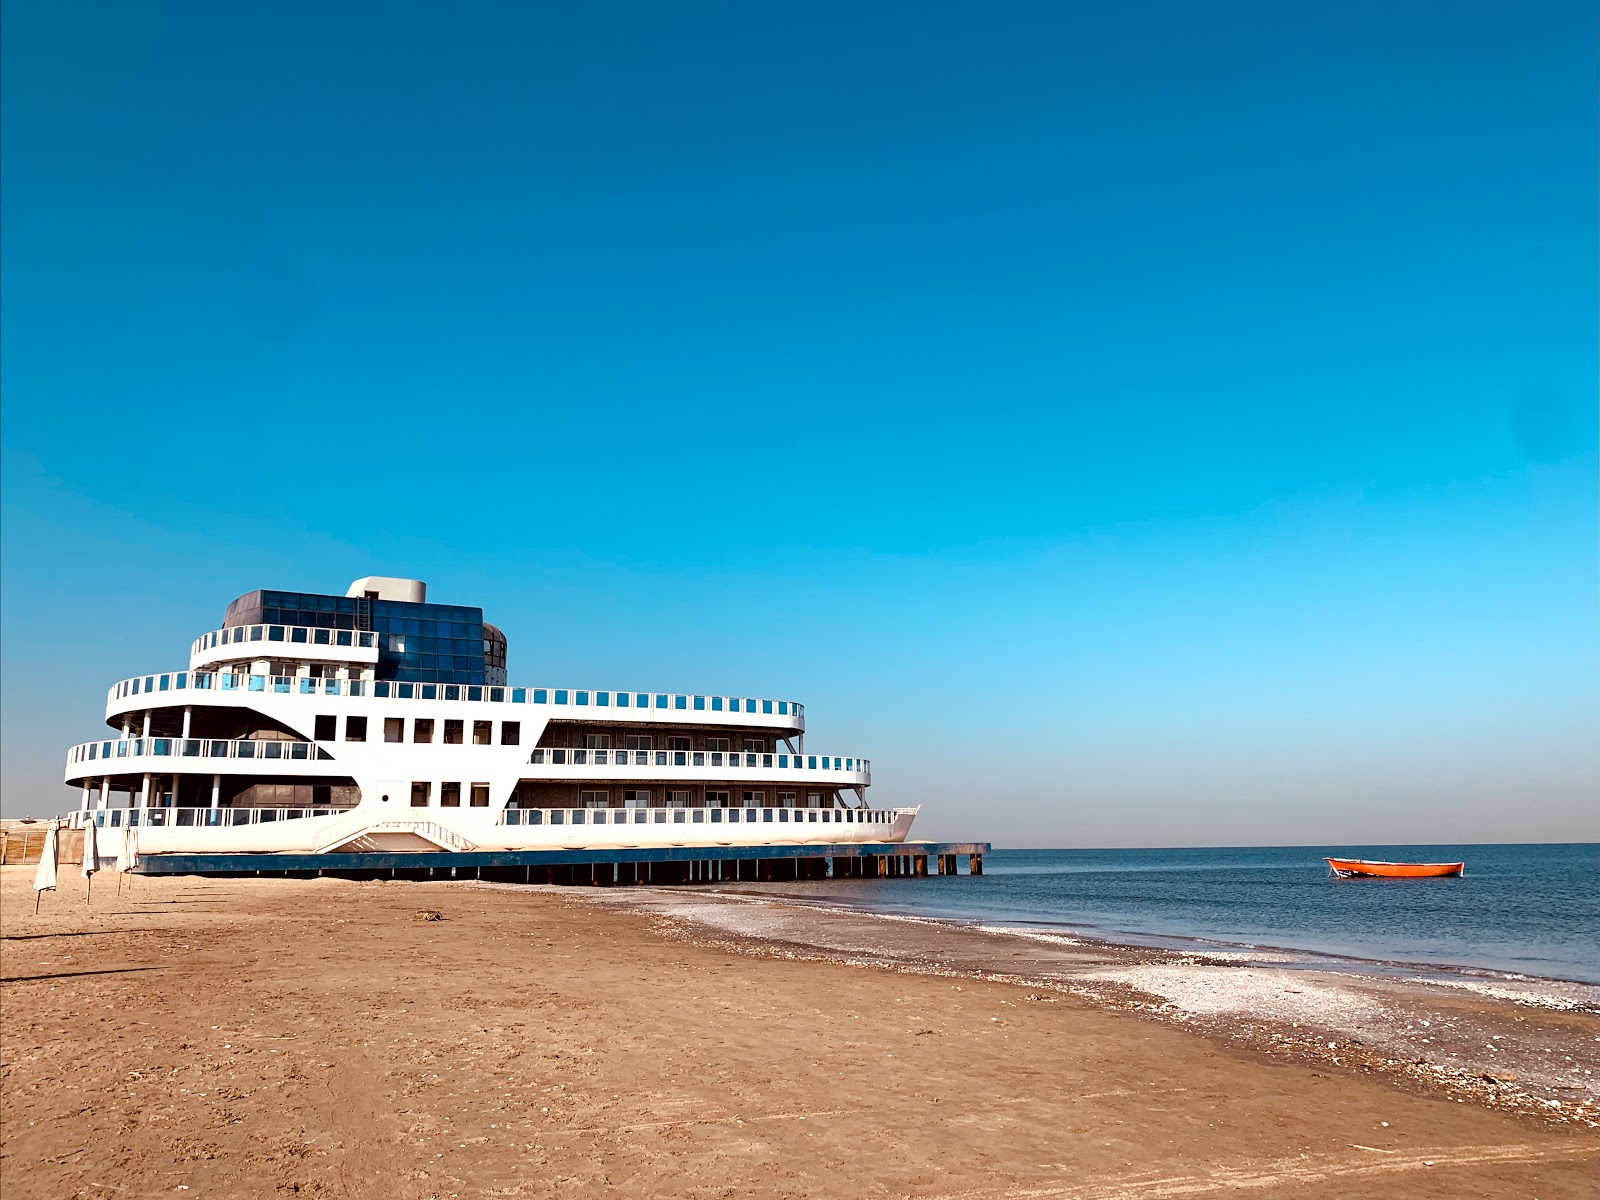 Photo de Port Said Beach - endroit populaire parmi les connaisseurs de la détente